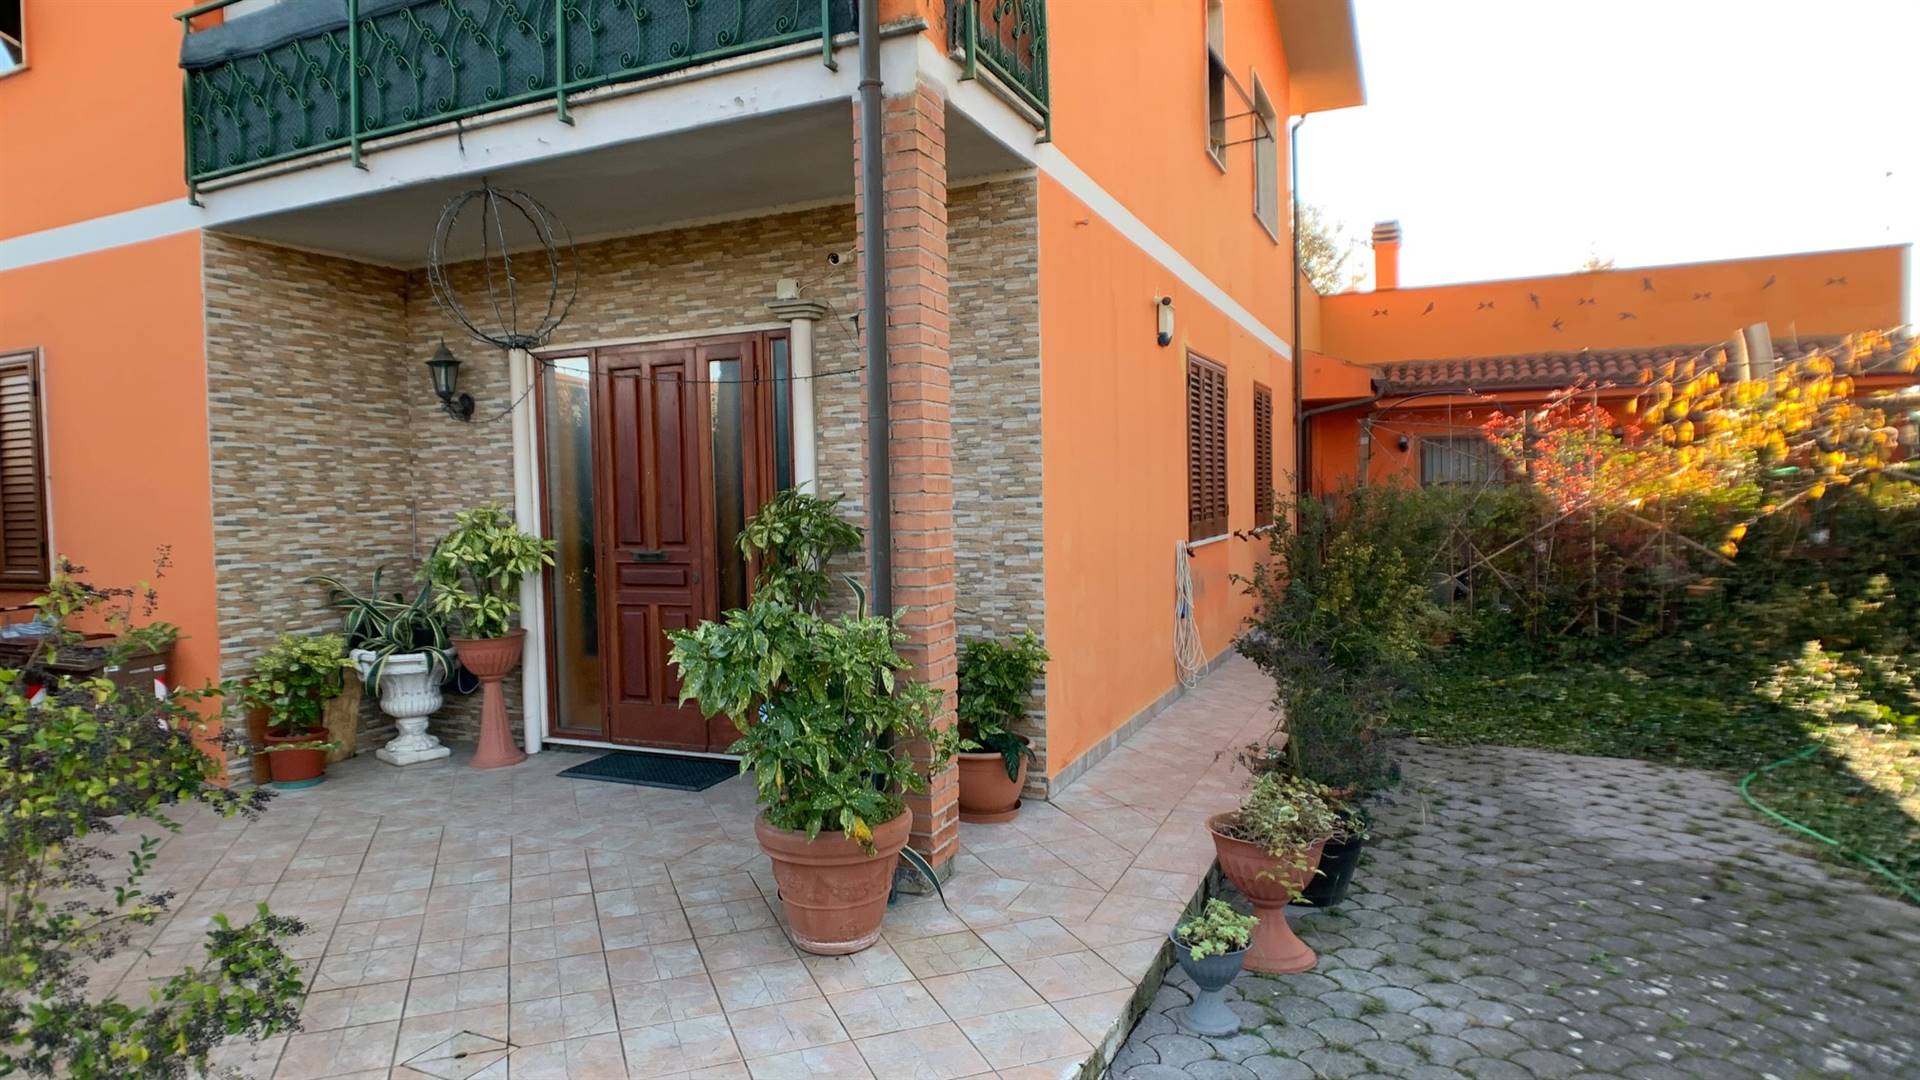 Villa Bifamiliare in vendita a Pieve a Nievole, 6 locali, zona Località: GALLO, prezzo € 285.000 | PortaleAgenzieImmobiliari.it